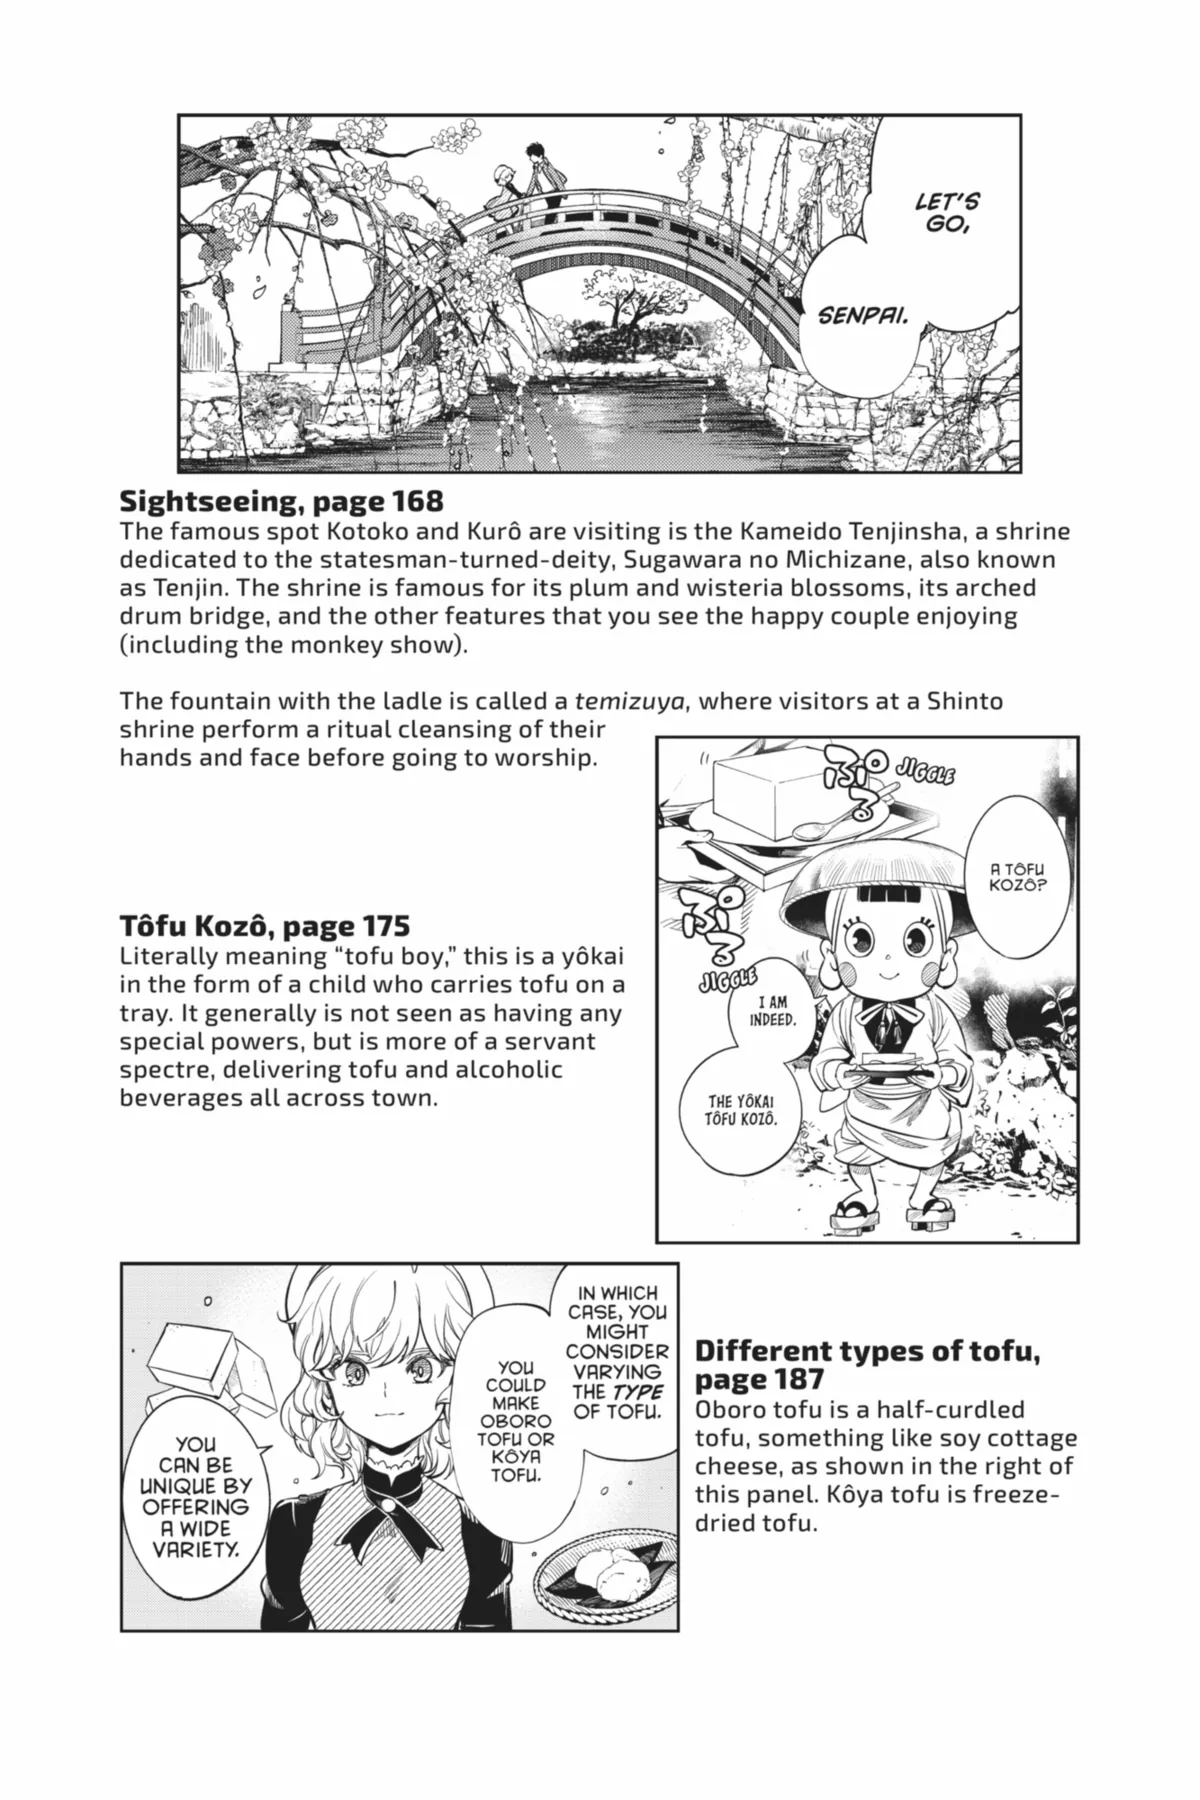 Read Superhuman Era Chapter 8 on Mangakakalot